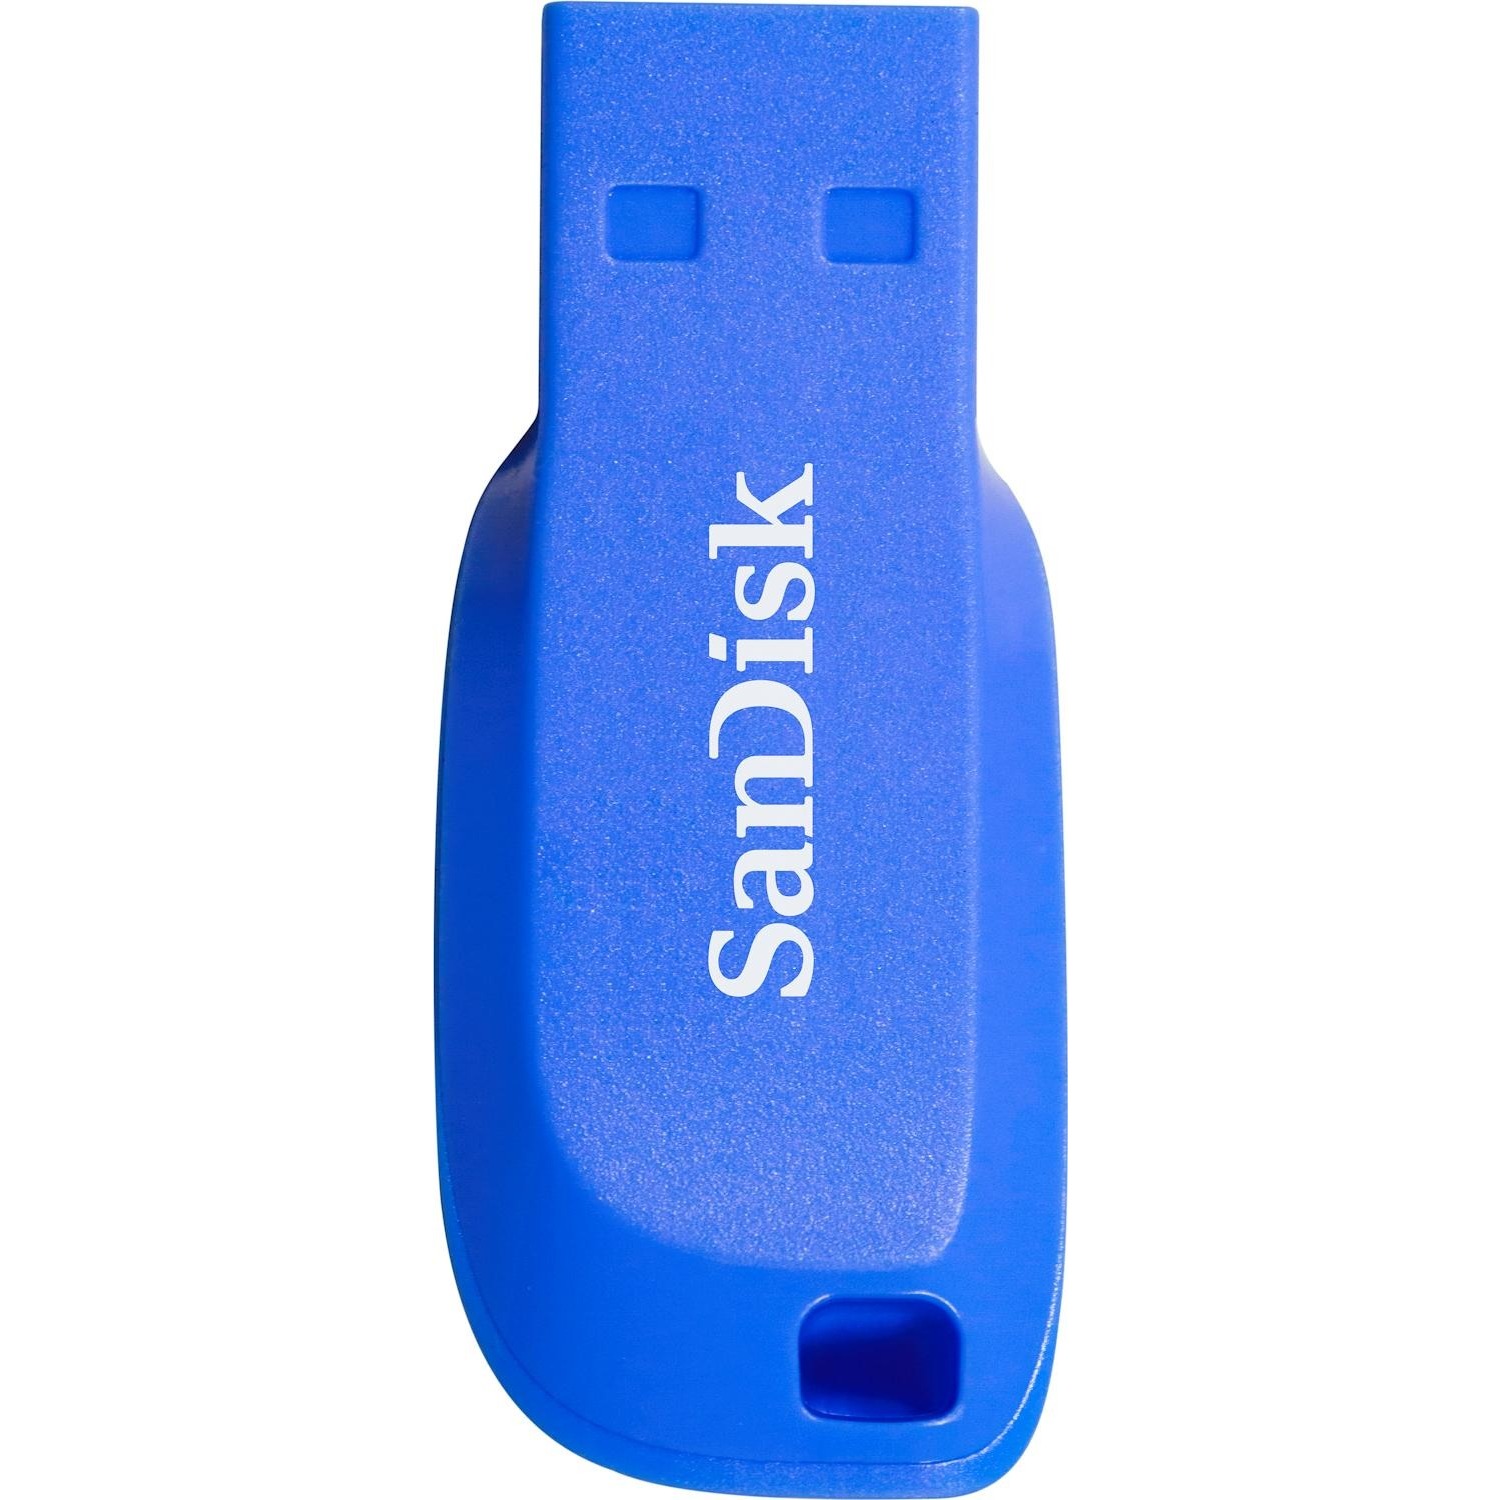 Immagine per Memoria USB San Disk Cruzer Blade 16GB 3 pezzi    blu rosa verde da DIMOStore